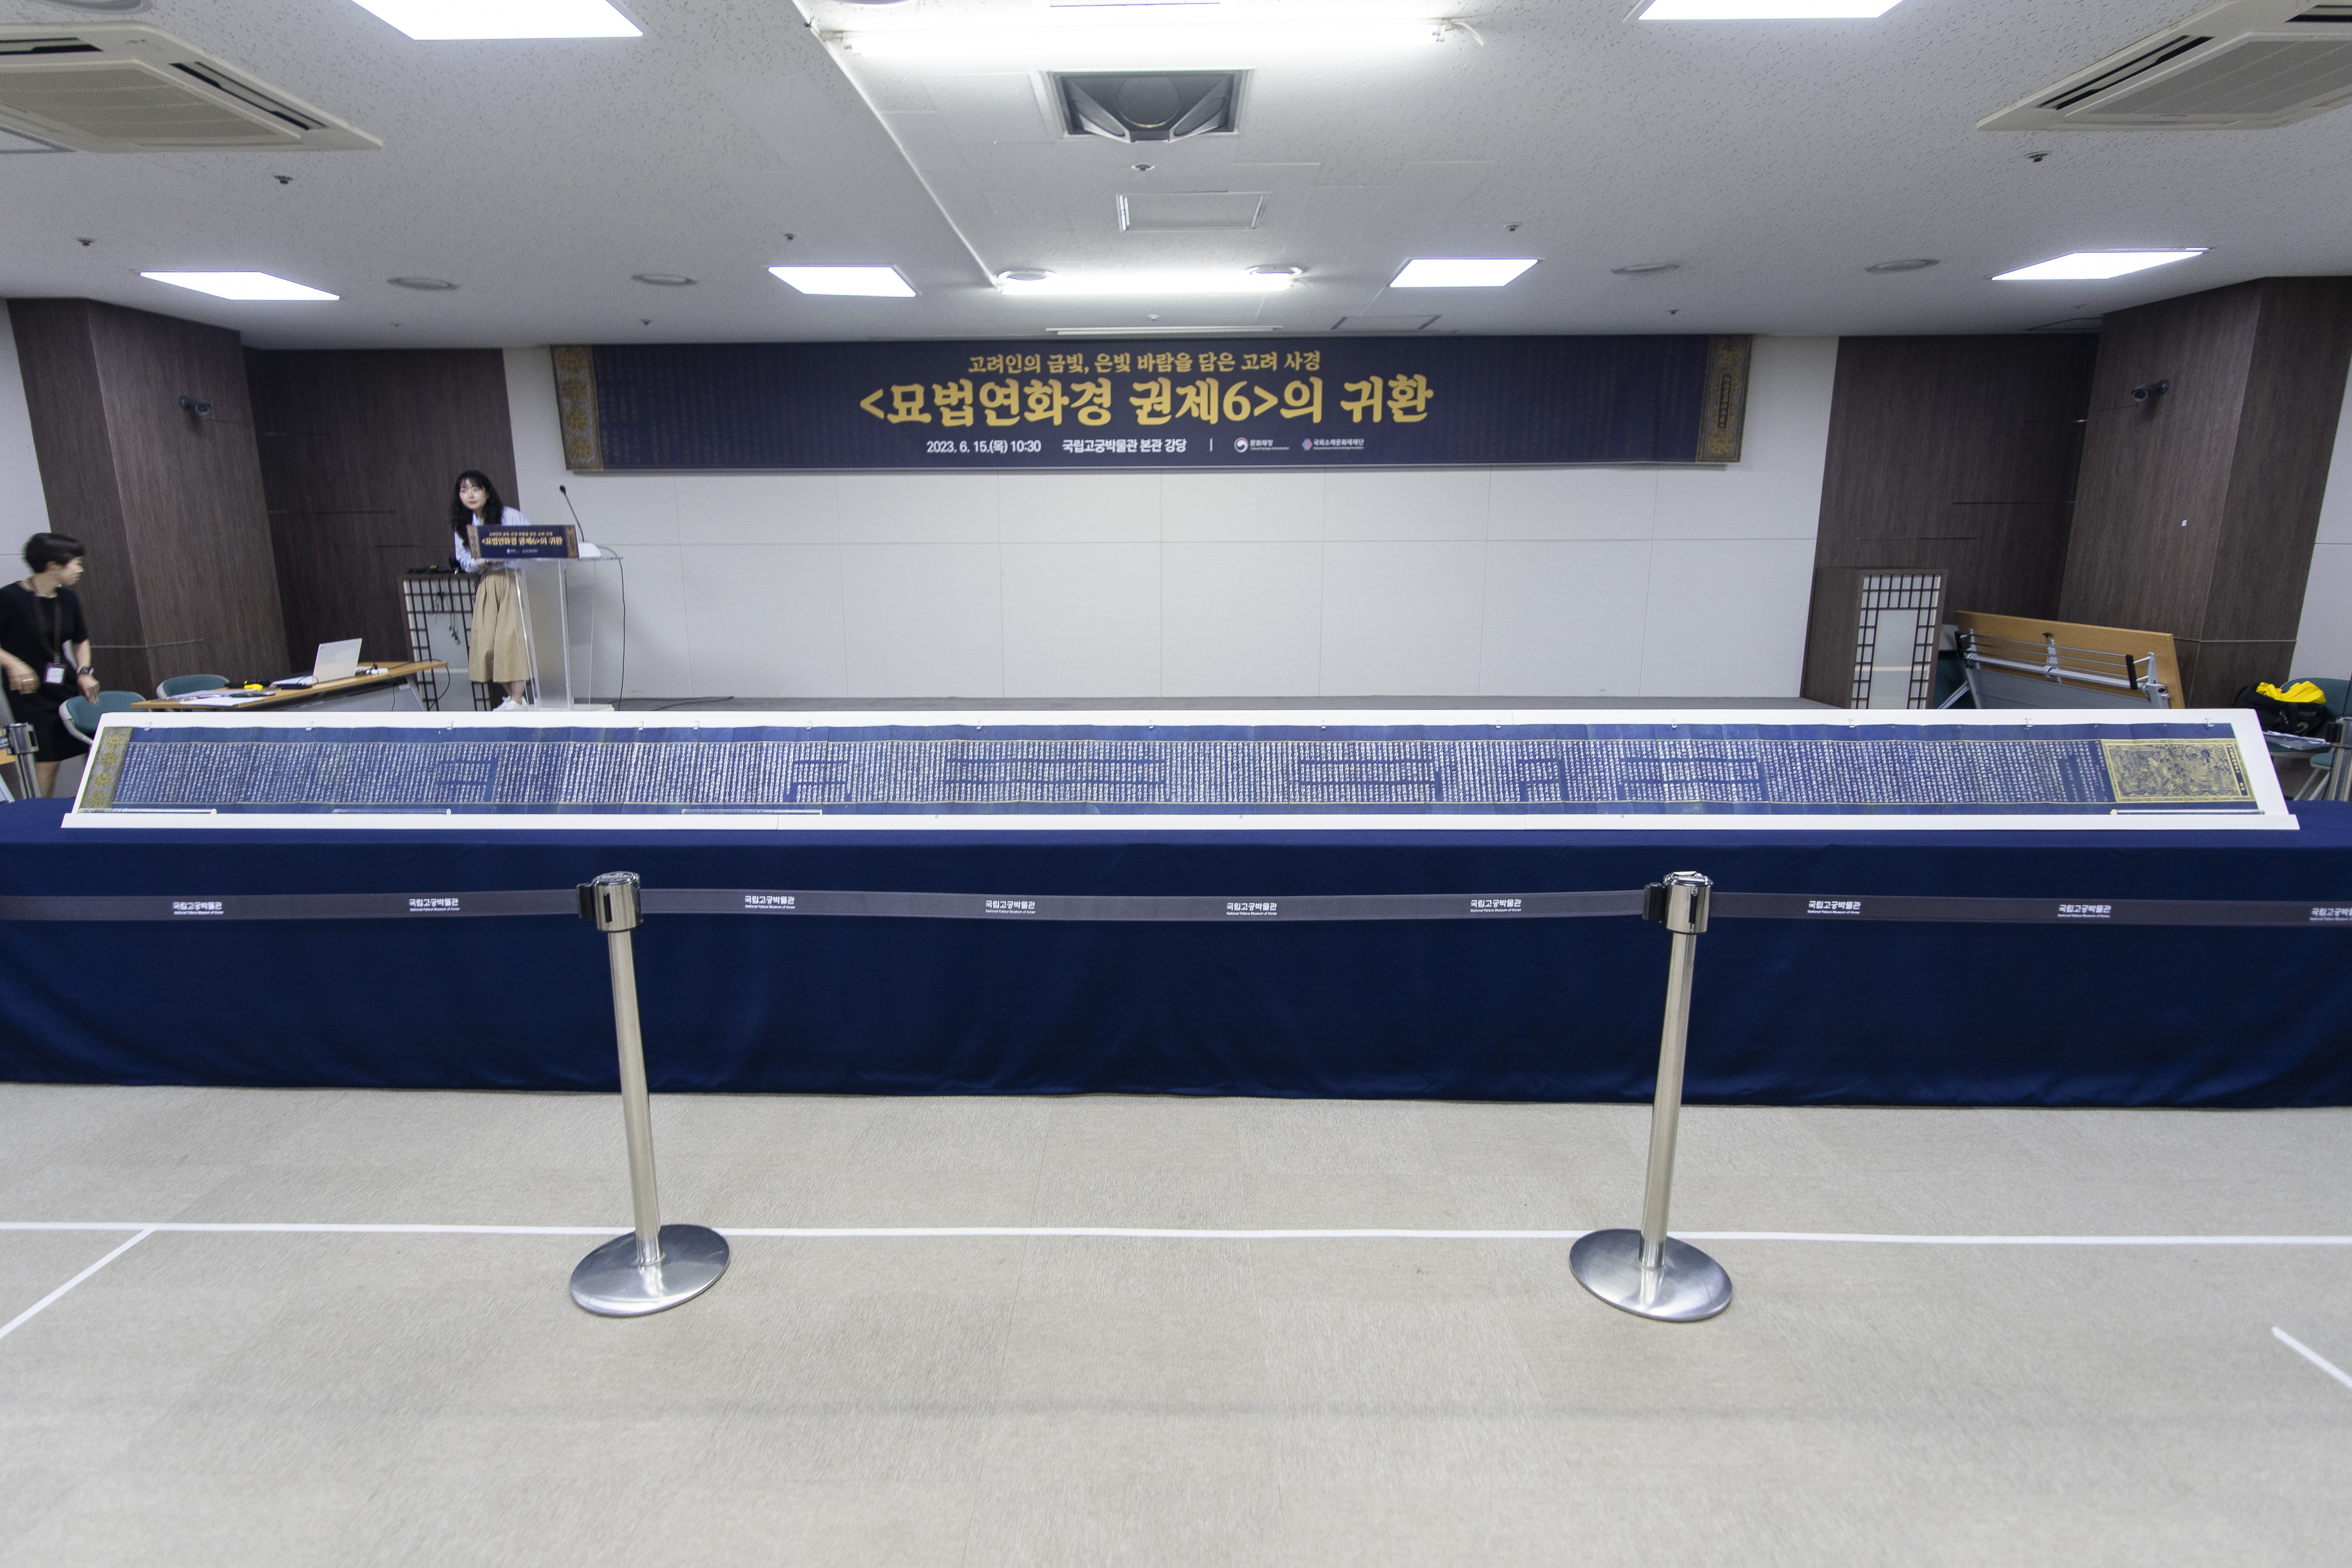 15일 서울 종로구 국립고궁박물관에서 열린 ‘묘법연화경 권제6’ 언론공개회에서 가로 길이 전체 10.7m에 달하는 ‘묘법연화경 권제6’이 펼쳐져 있다. 류재민 기자